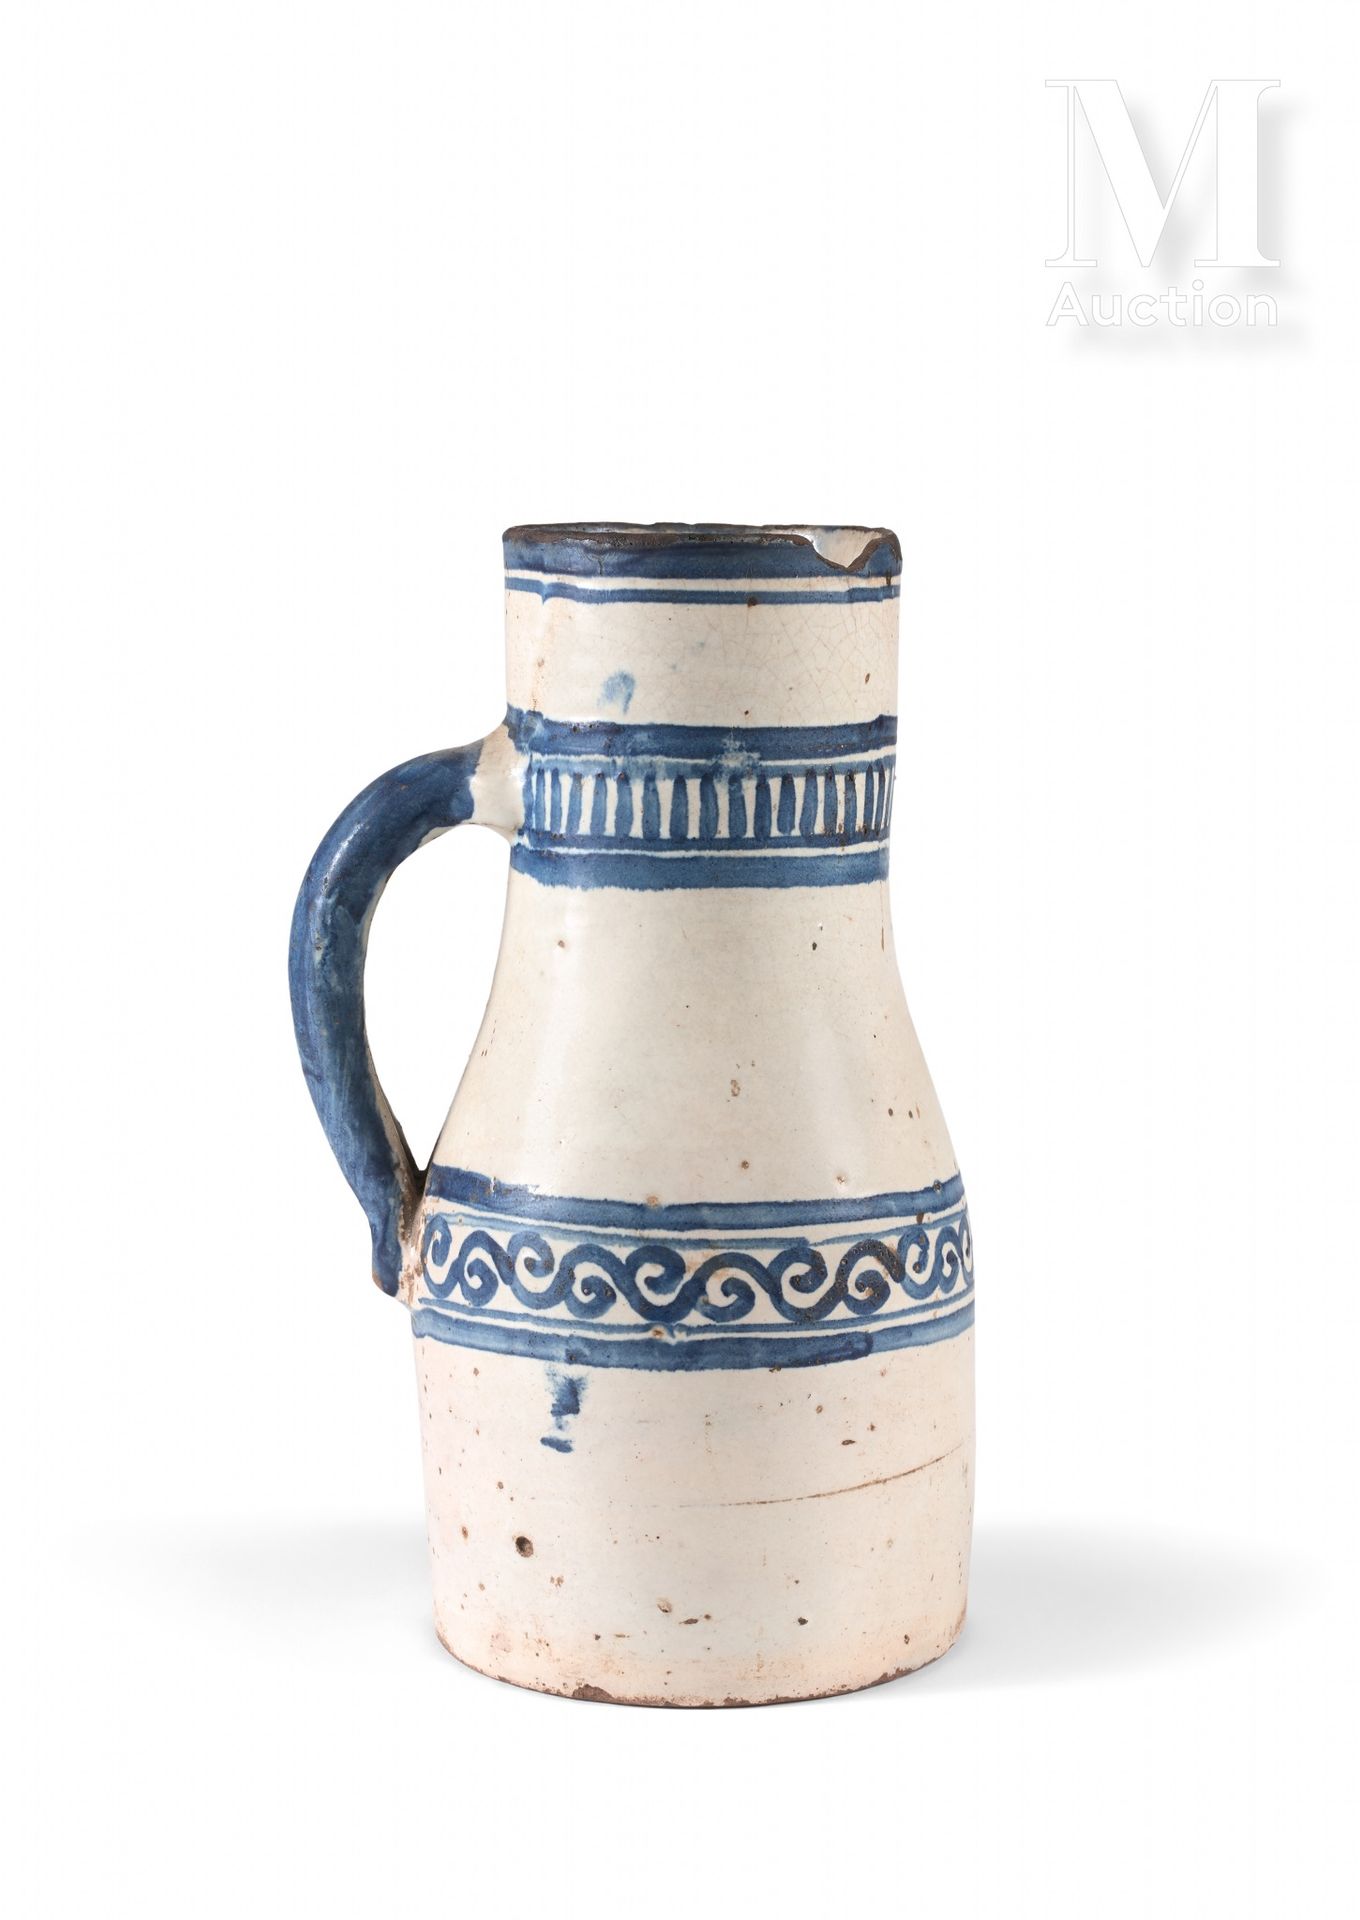 Berrada - Jarre à eau Marocco, Fez, XVIII secolo

Caraffa in ceramica con decora&hellip;